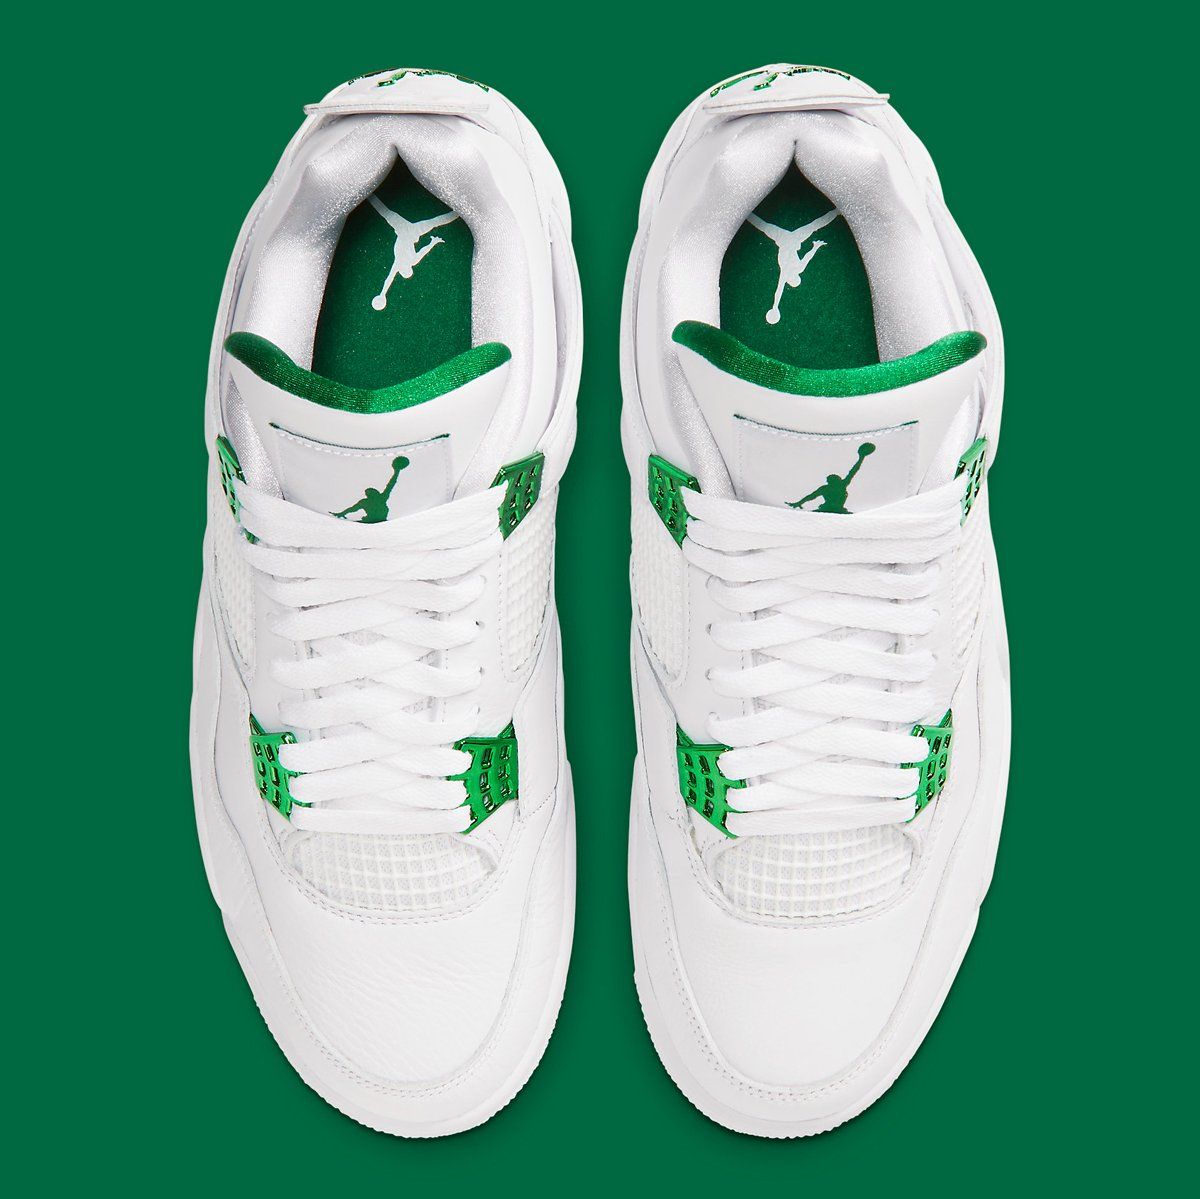 white green jordan 4s